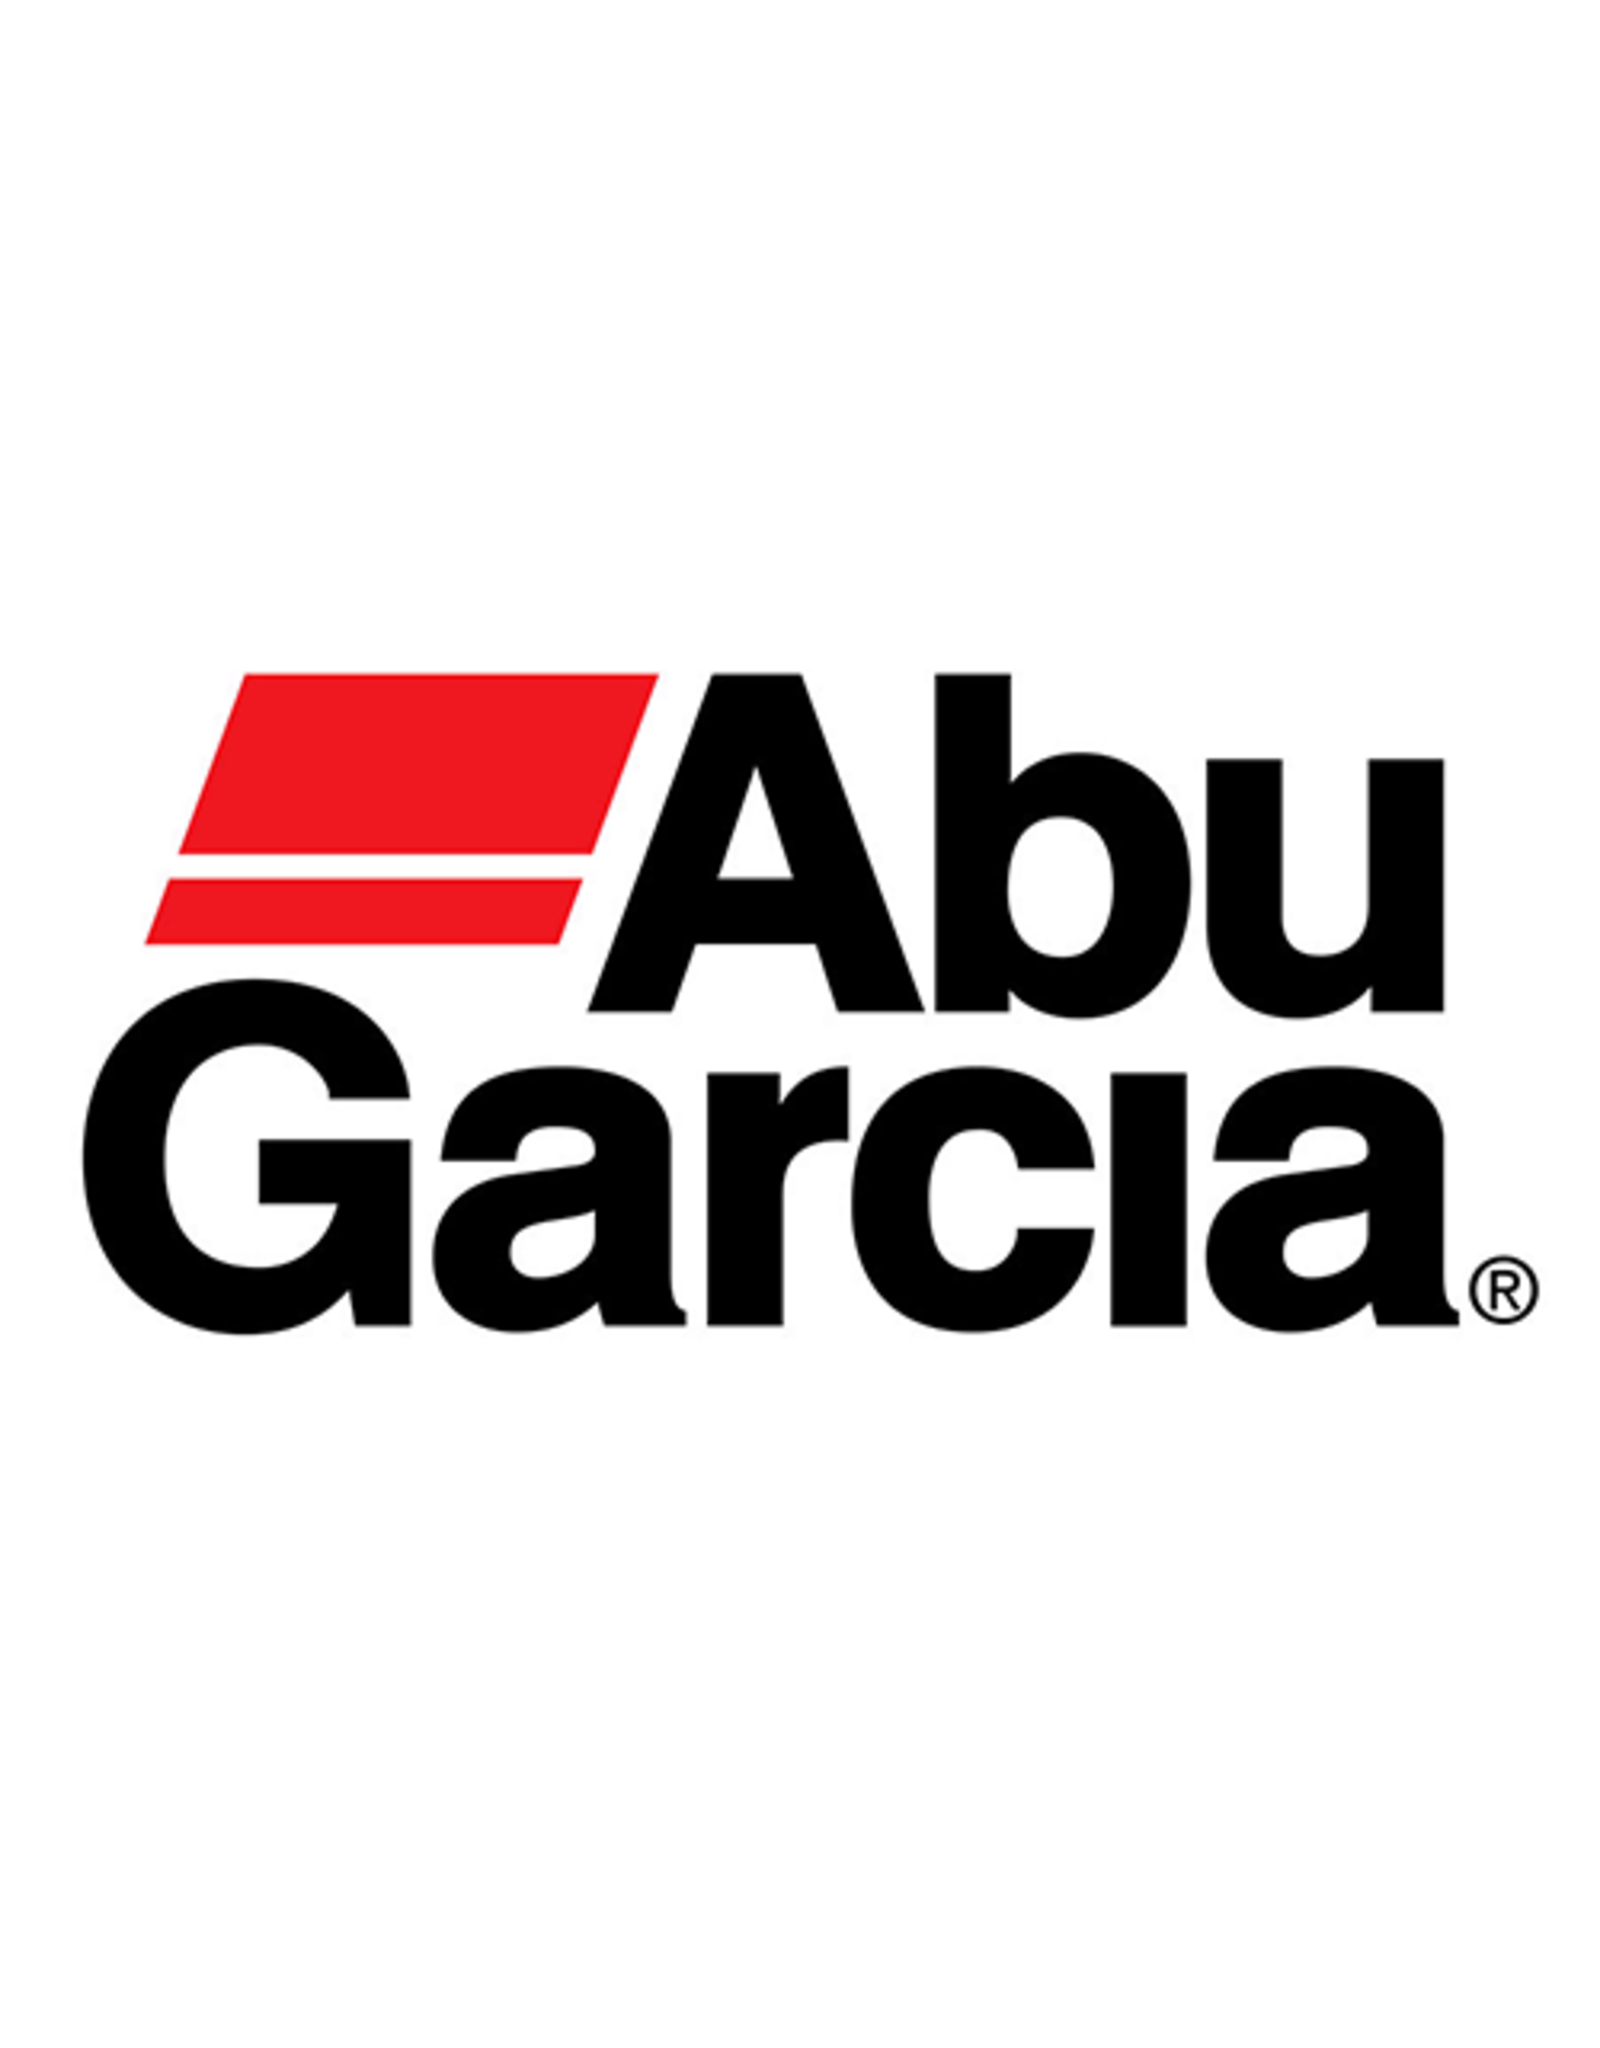 Abu Garcia 4490  C LOCK